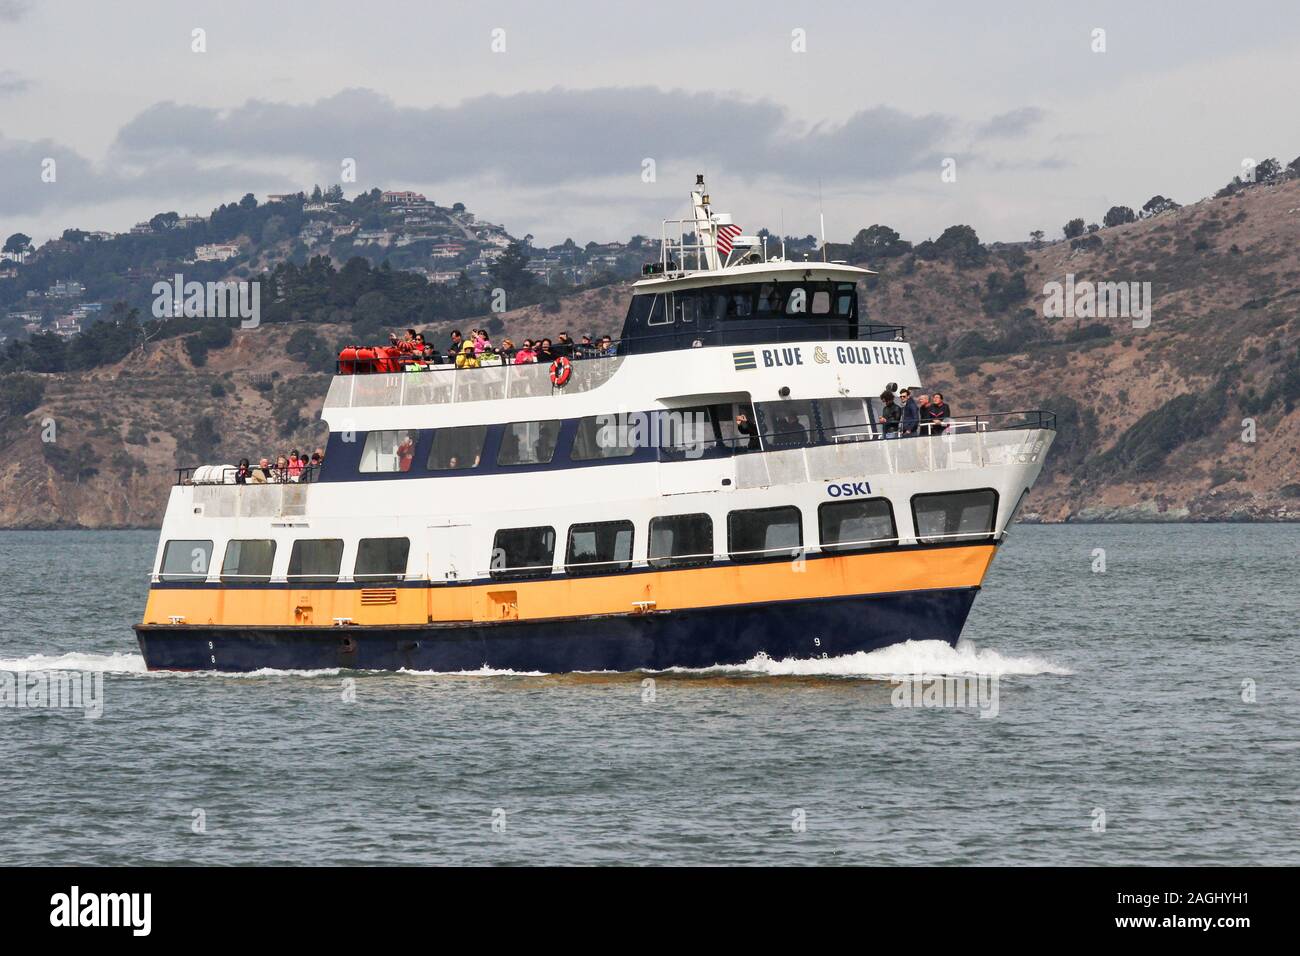 M/S Oski, Blue & Gold Fleet Fähre bringen Touristen aus Sausalito zurück nach San Francisco. In der San Francisco Bay, United Staes von Amerika. Stockfoto